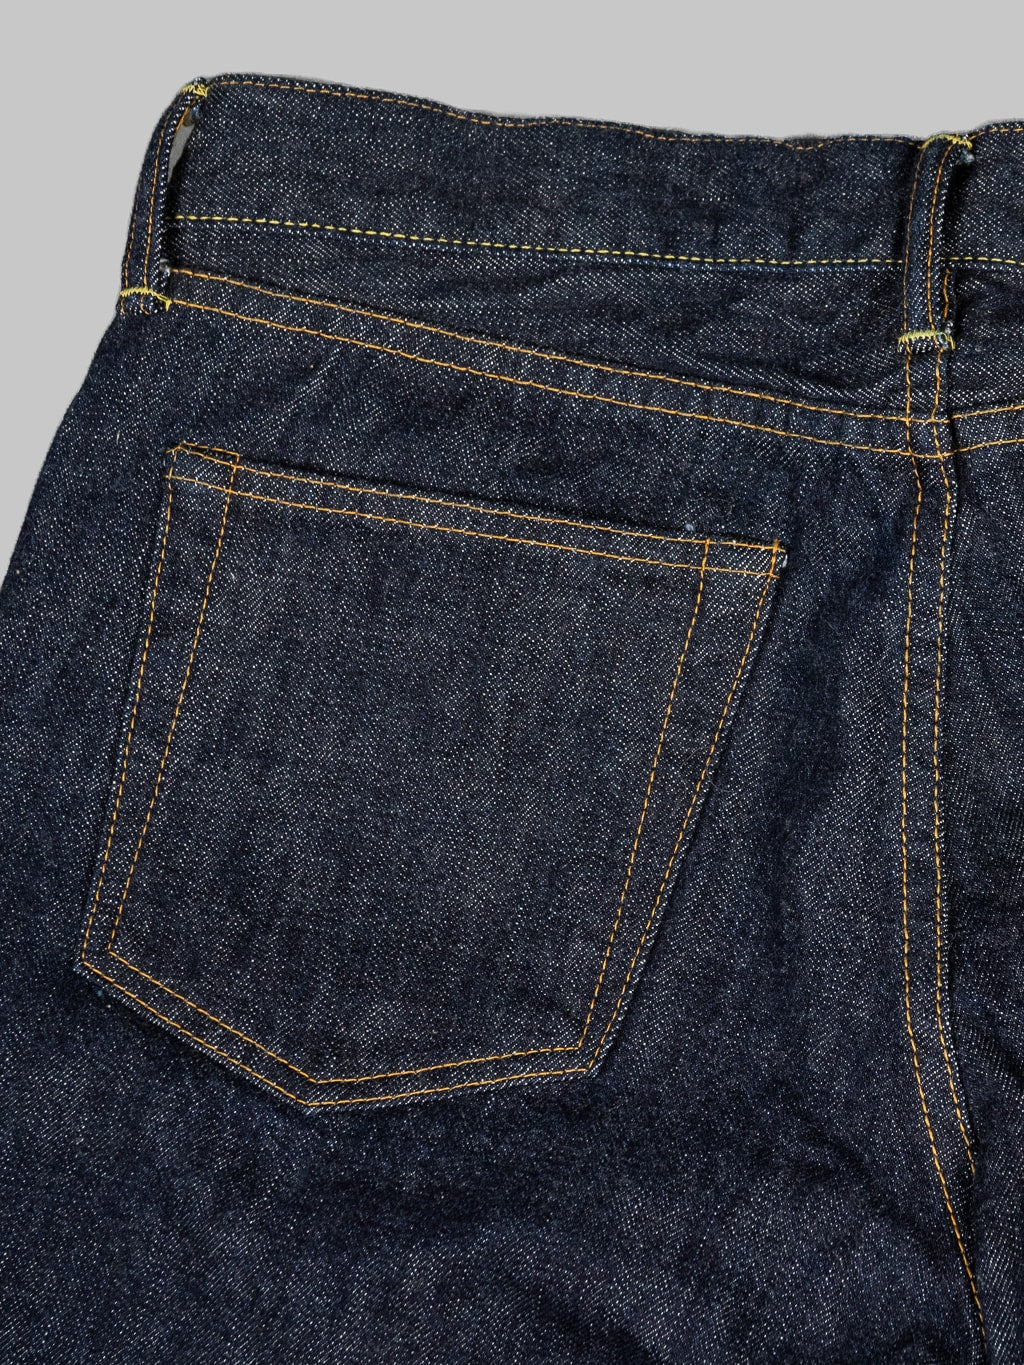 tcb 50s regular straight indigo selvedge japanese jeans  back pocket